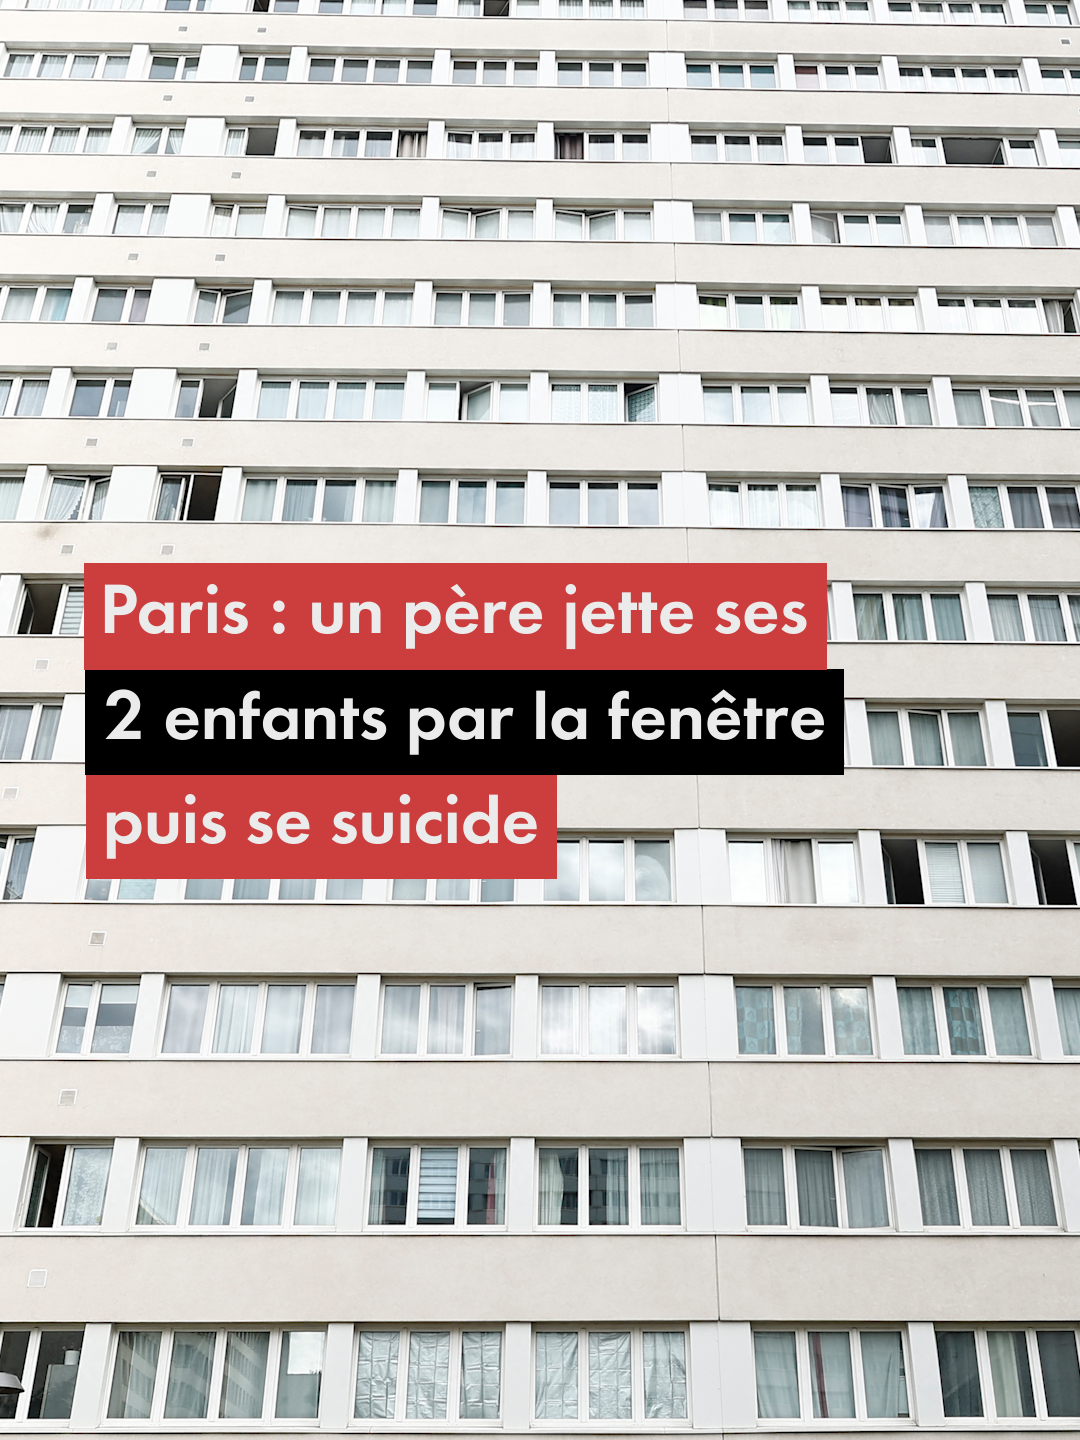 Ce samedi 6 juillet, un père s'est suicidé après avoir jeté ses deux enfants du cinquième étage d'un immeuble à Paris. Le pronostic vital des enfants est engagé. [AFP] #paris